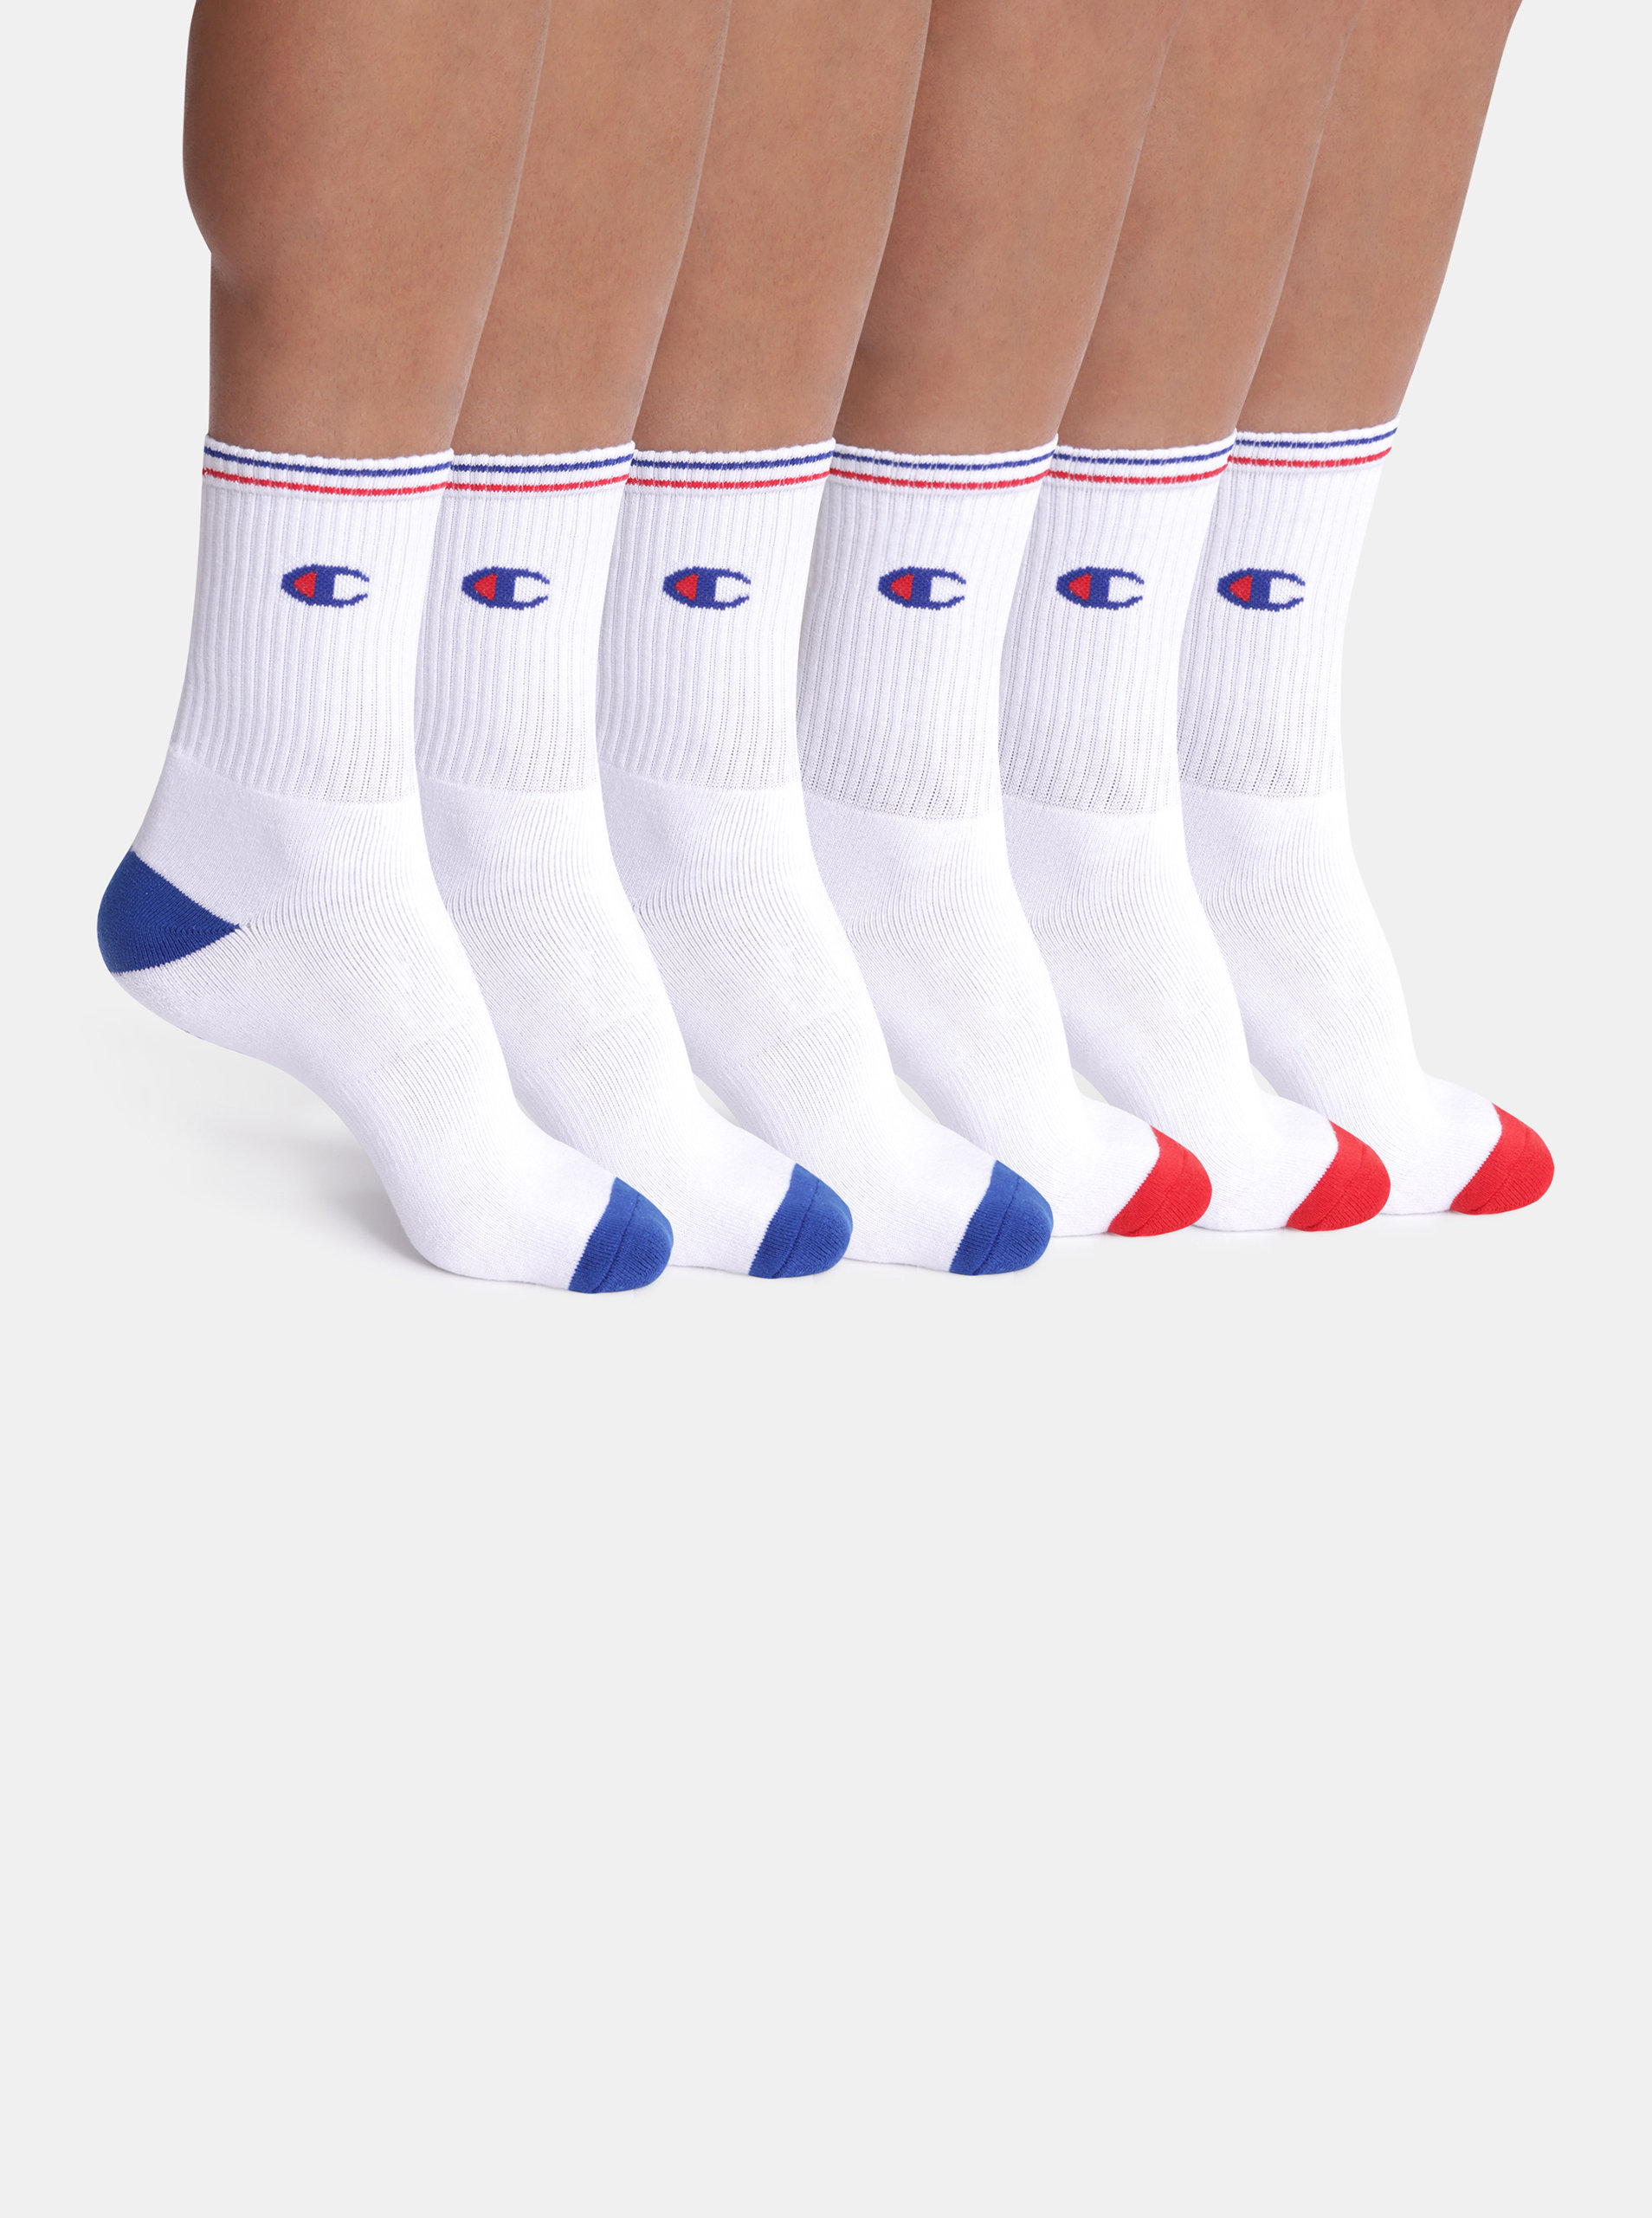 Fotografie CREW SOCKS CHAMPION PERFORMANCE 6x - 6 párů sportovních ponožek s logem Champion - bílá - červená - modrá